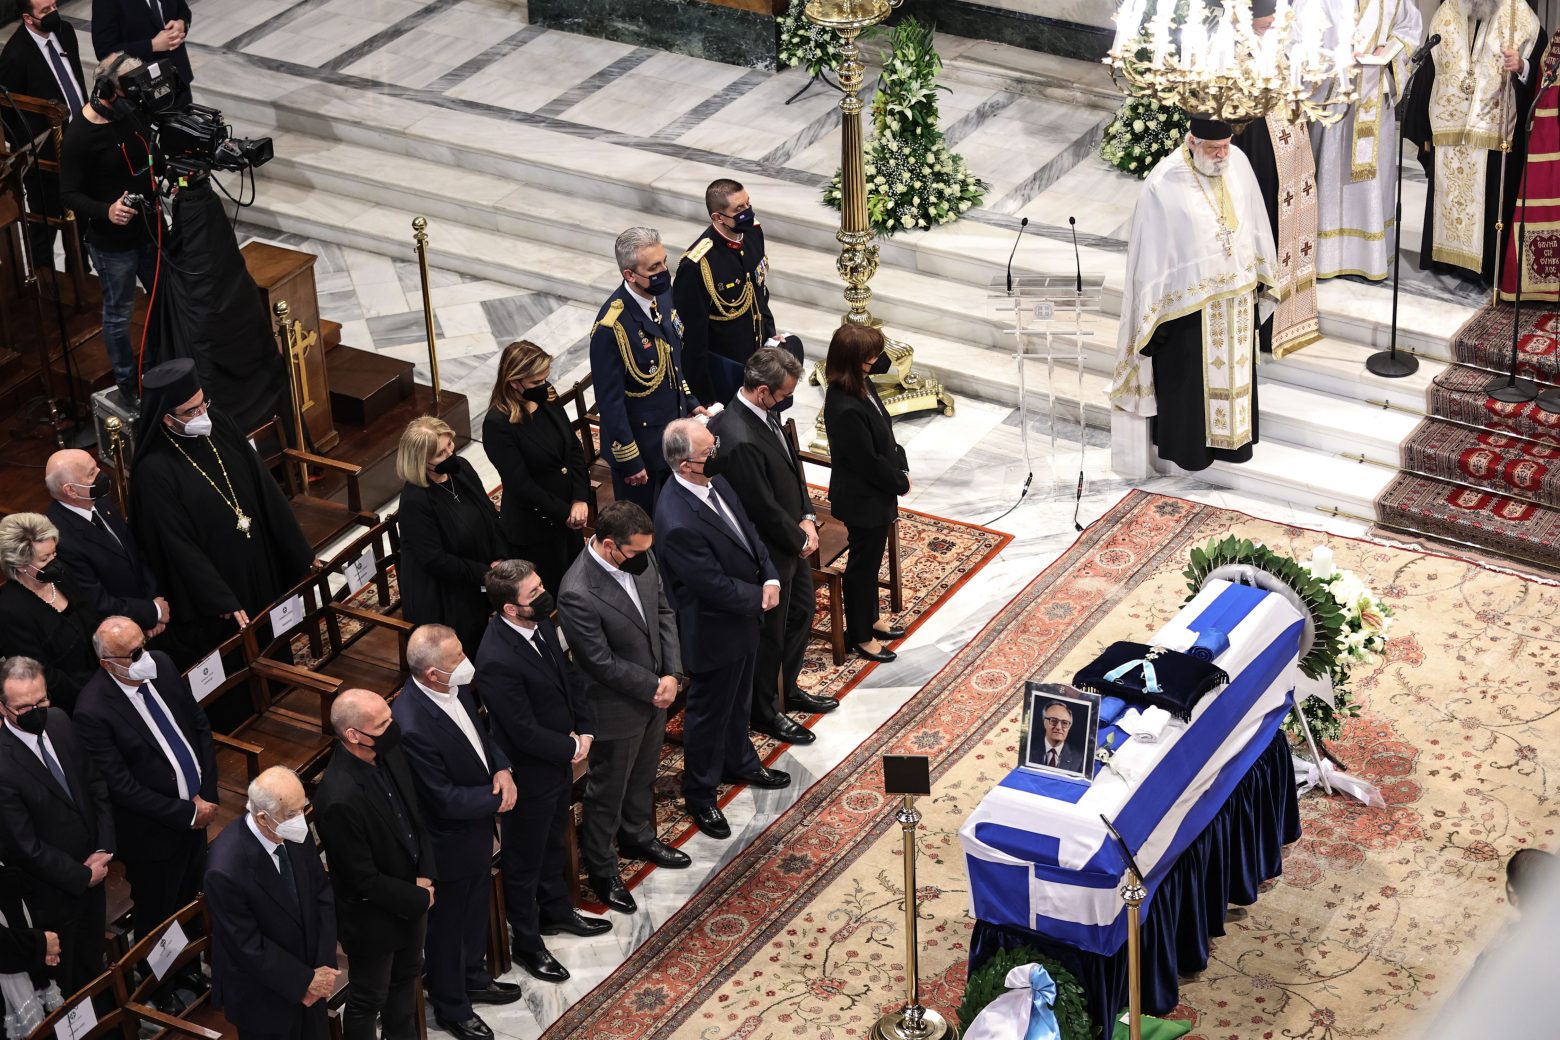 Χρήστος Σαρτζετάκης: Καλυμμένο με ελληνική σημαία το φέρετρο - Ποιοι είπαν το τελευταίο «αντίο»